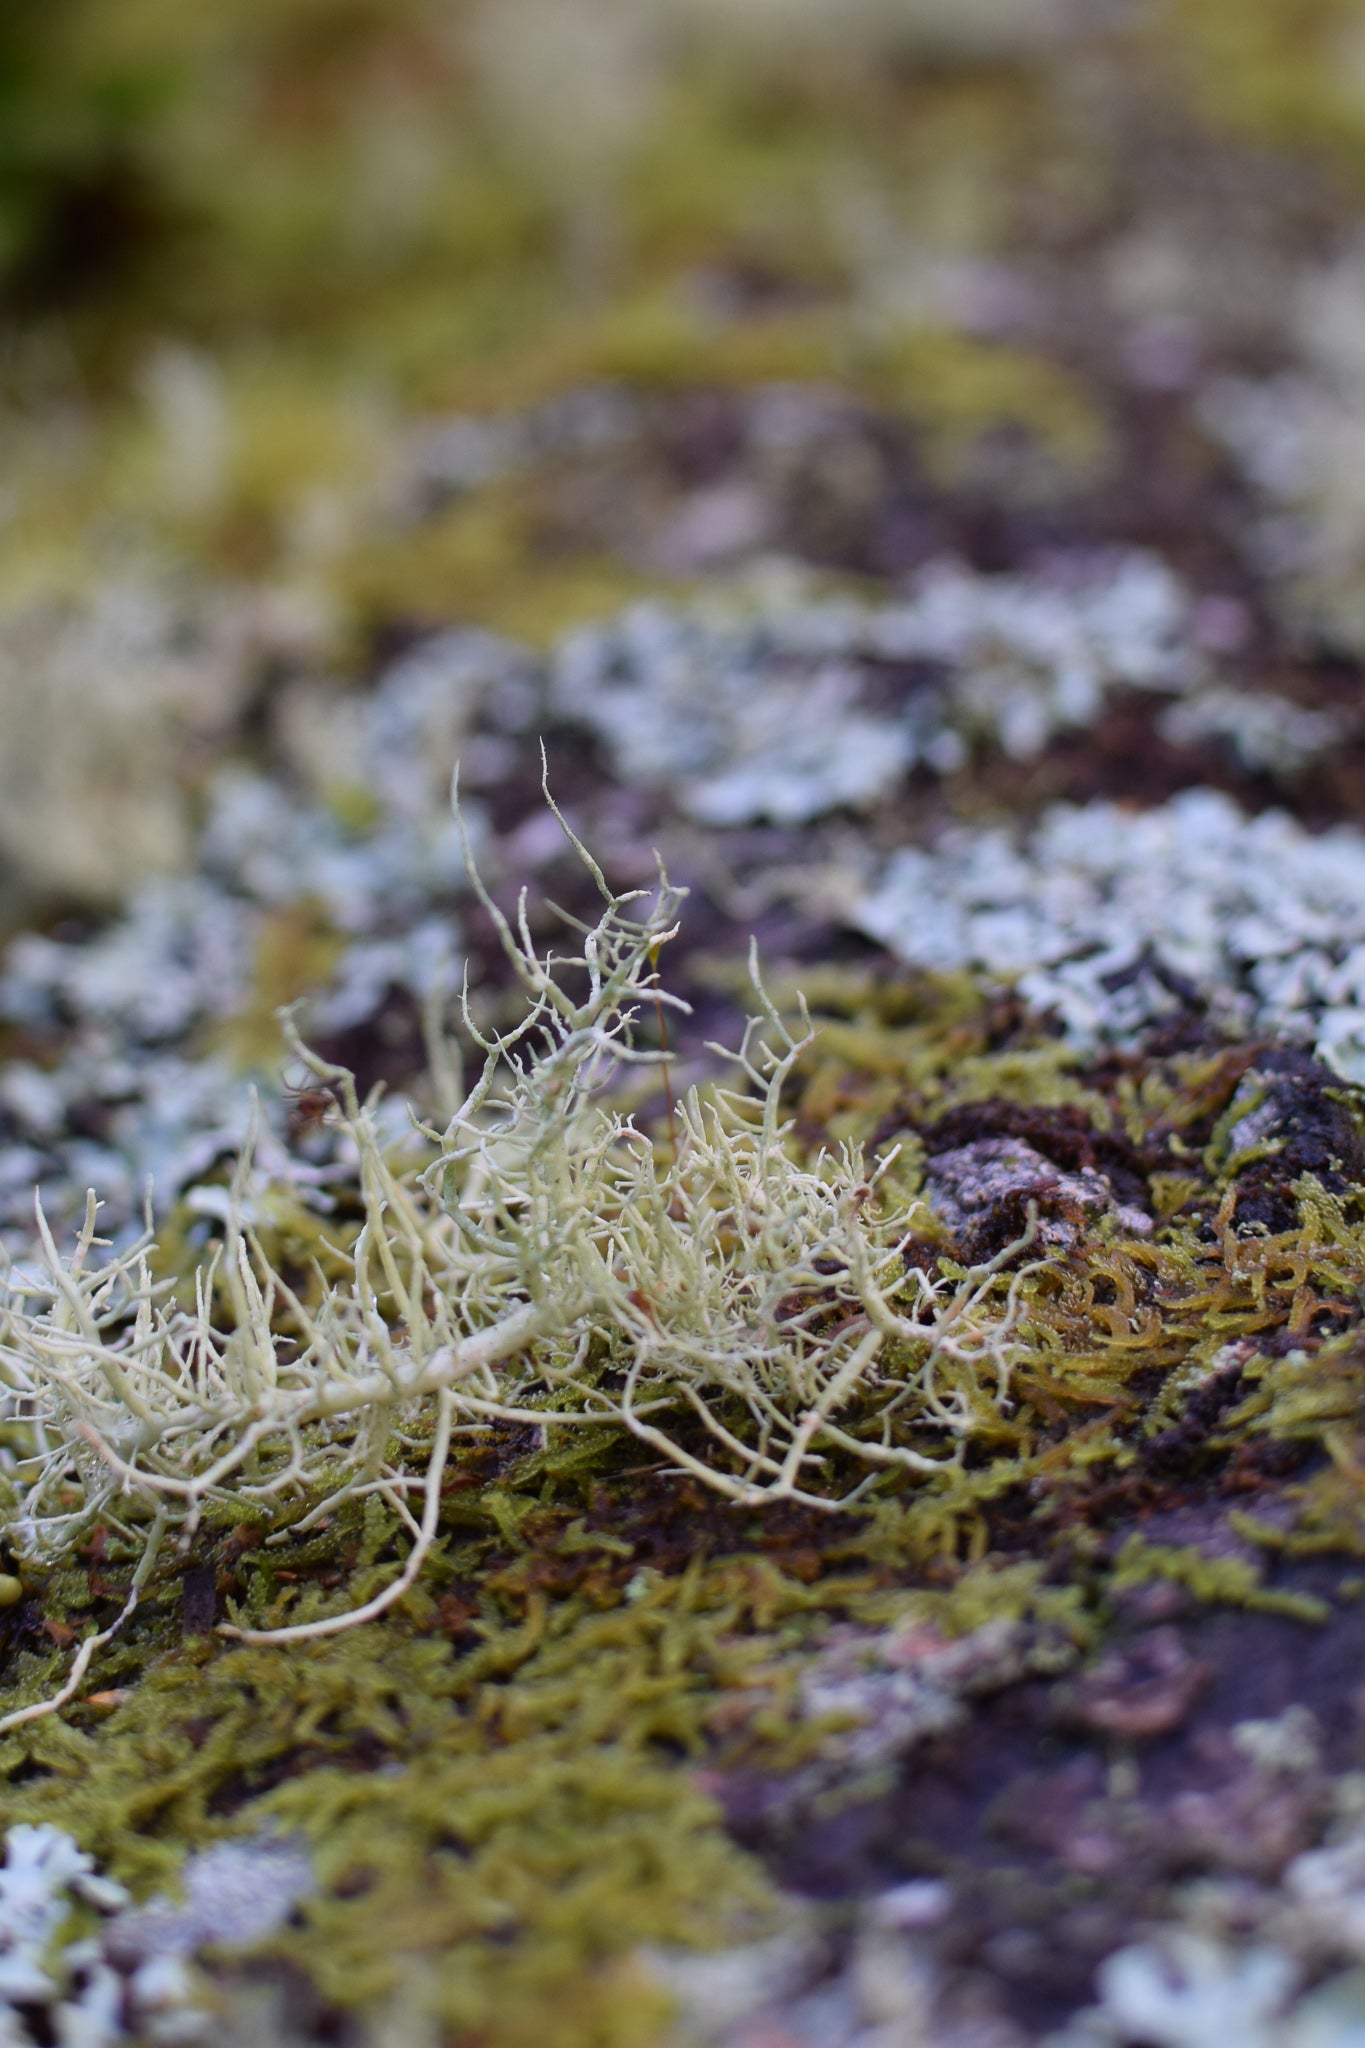 lichen on a log at Coed Felenrhyd, woodlast trust, maentwrog